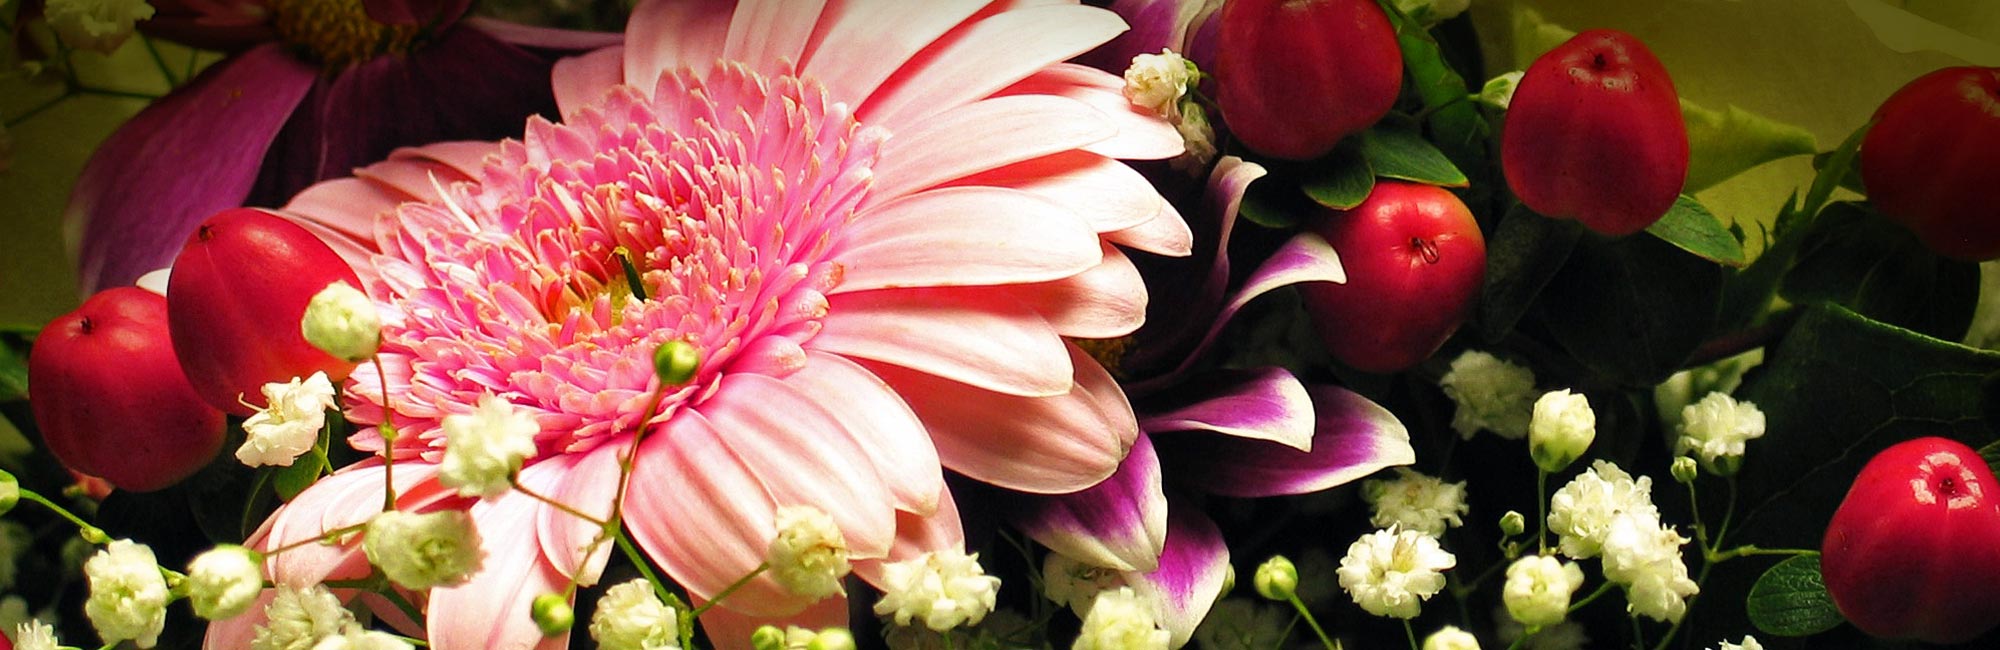 Fleuriste à Ploërmel : Composition florale et bouquet